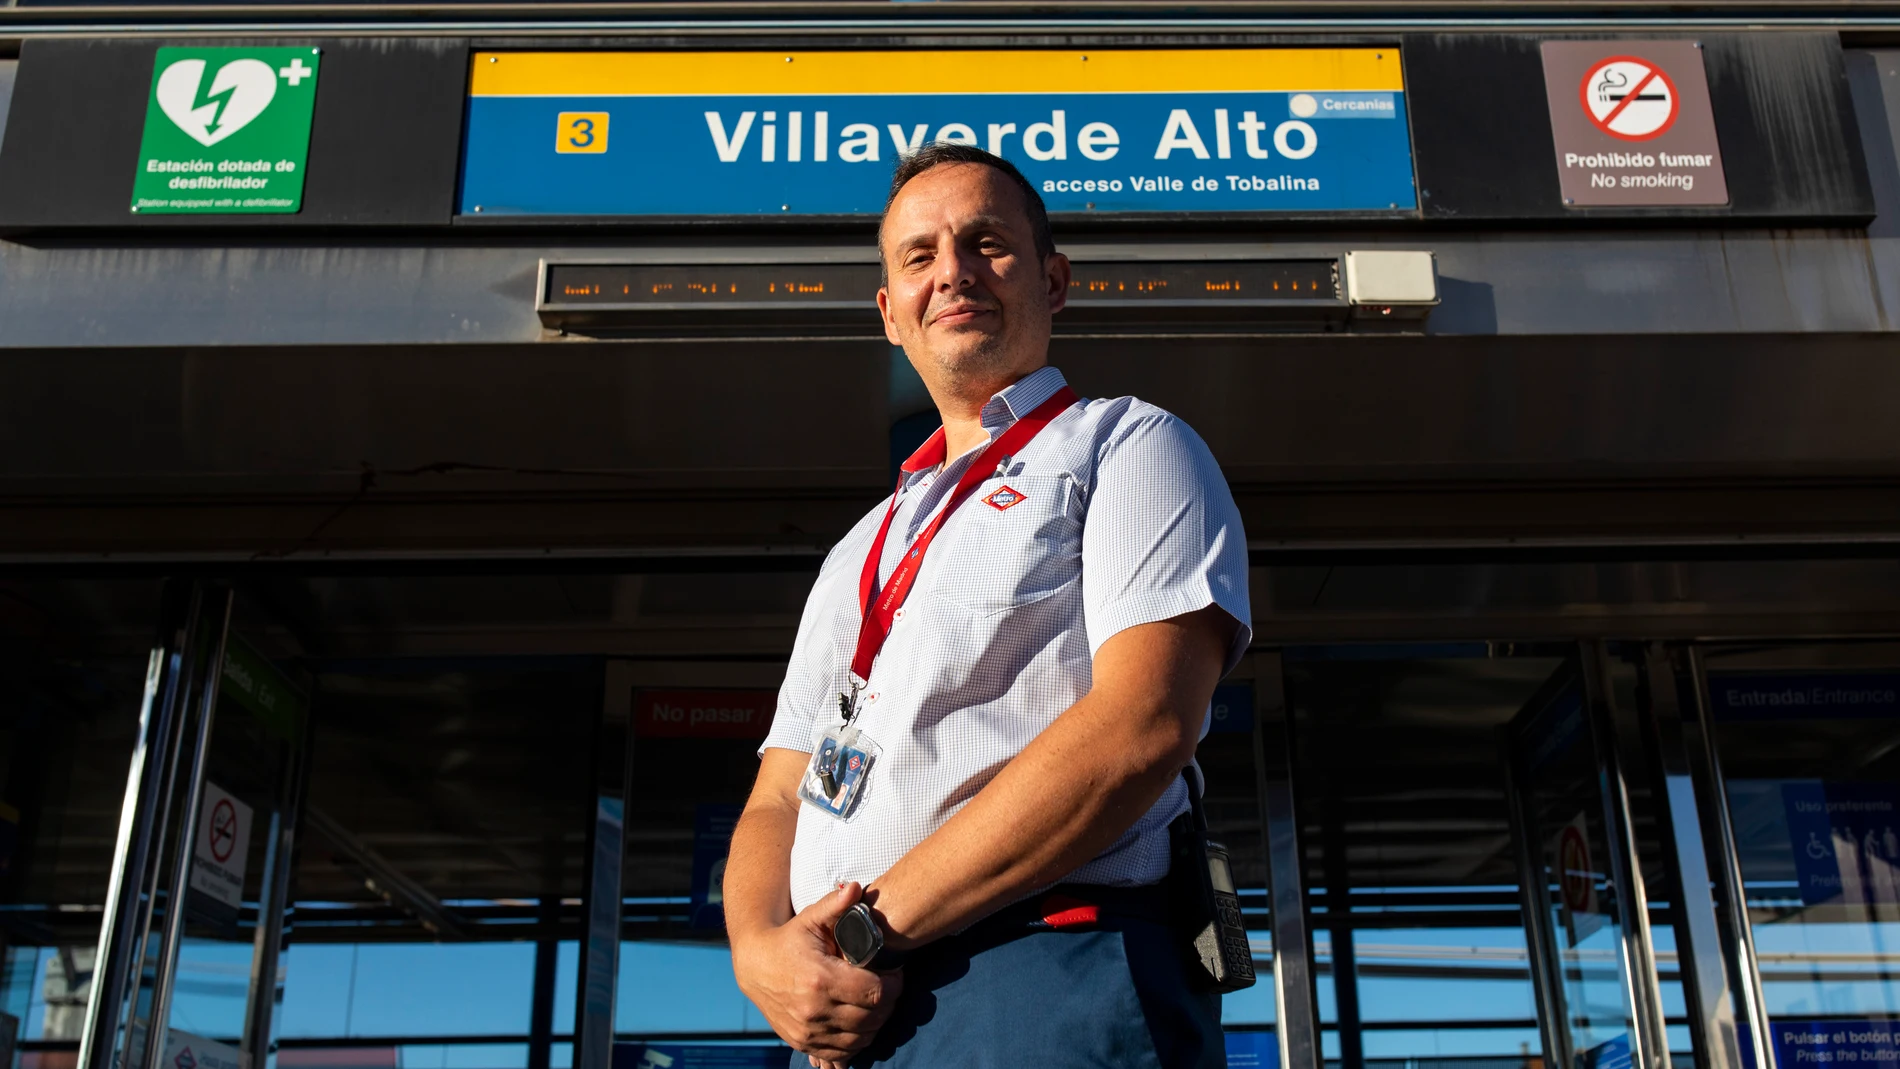 Entrevista a David, trabajador de metro que sofoco un incendio en las puertas de la estación de metro de Villaverde Alto donde trabaja y ha sido reconocido por la empresa por su accion.